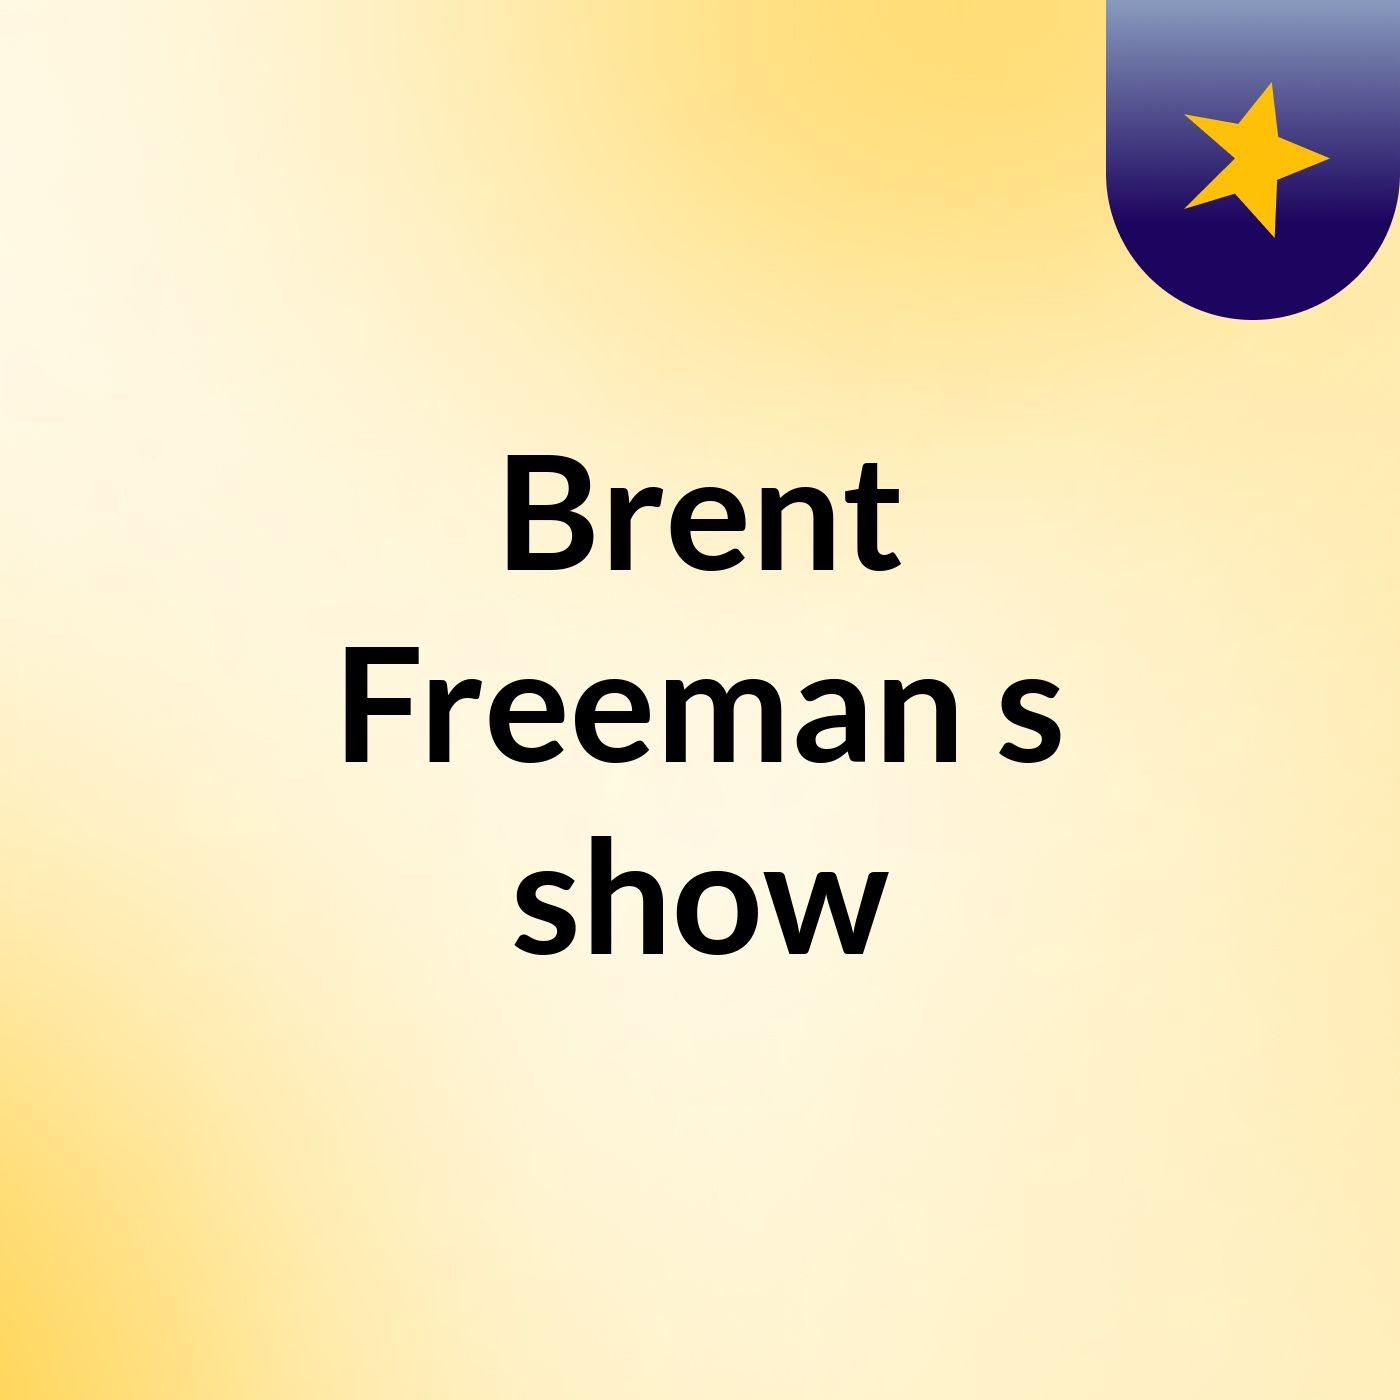 Episode 13 - Brent Freeman's show